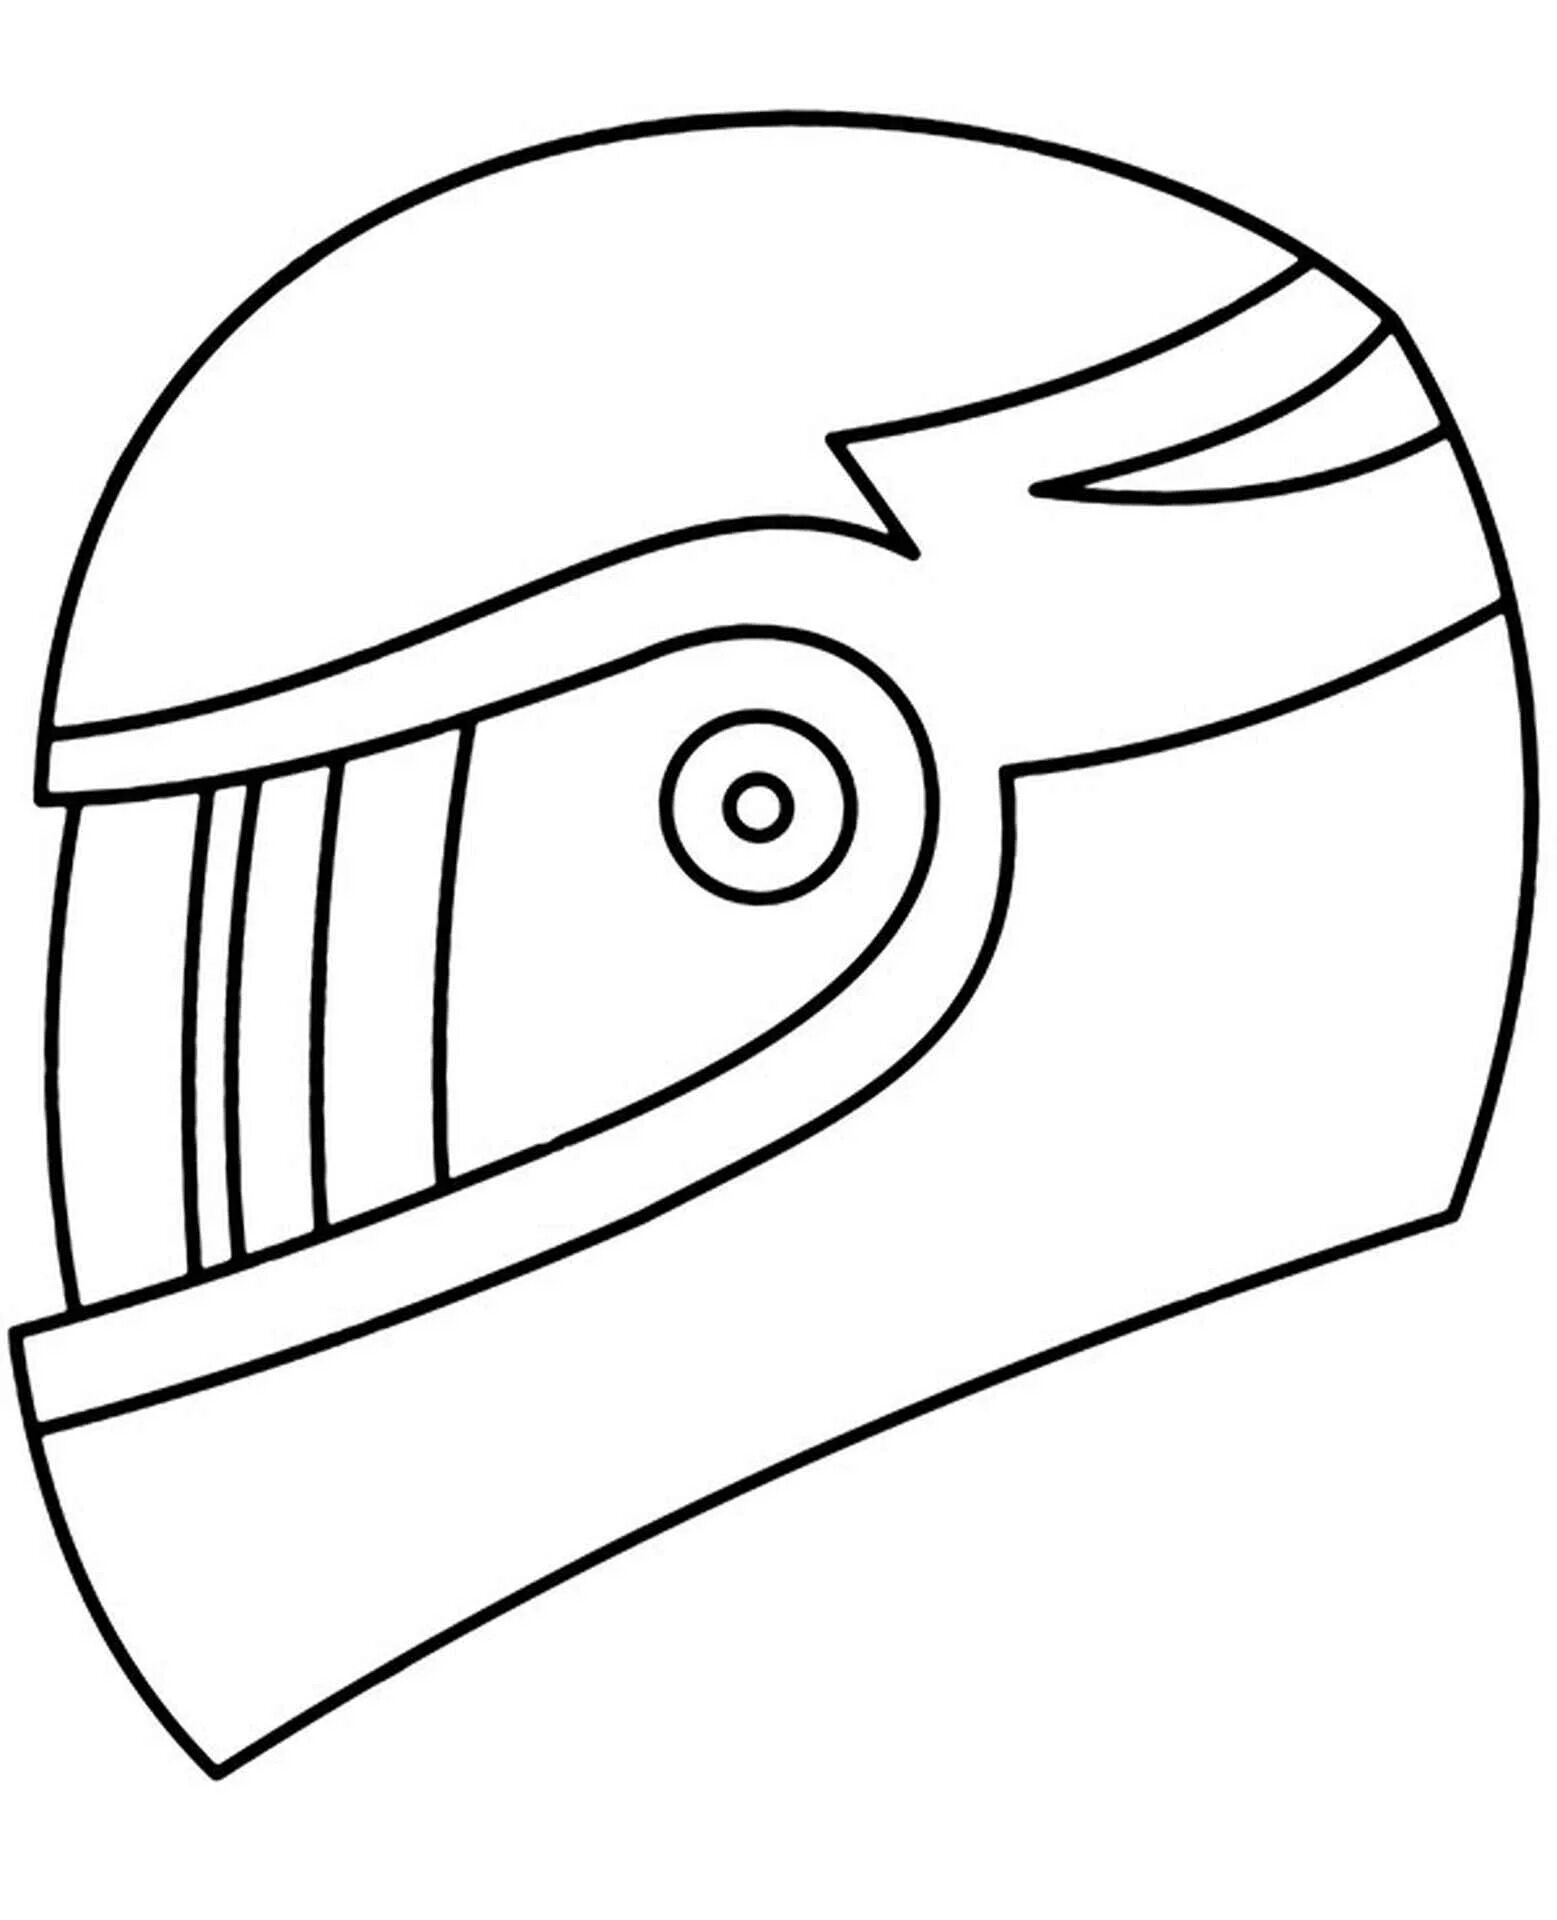 Motorcycle helmet #4